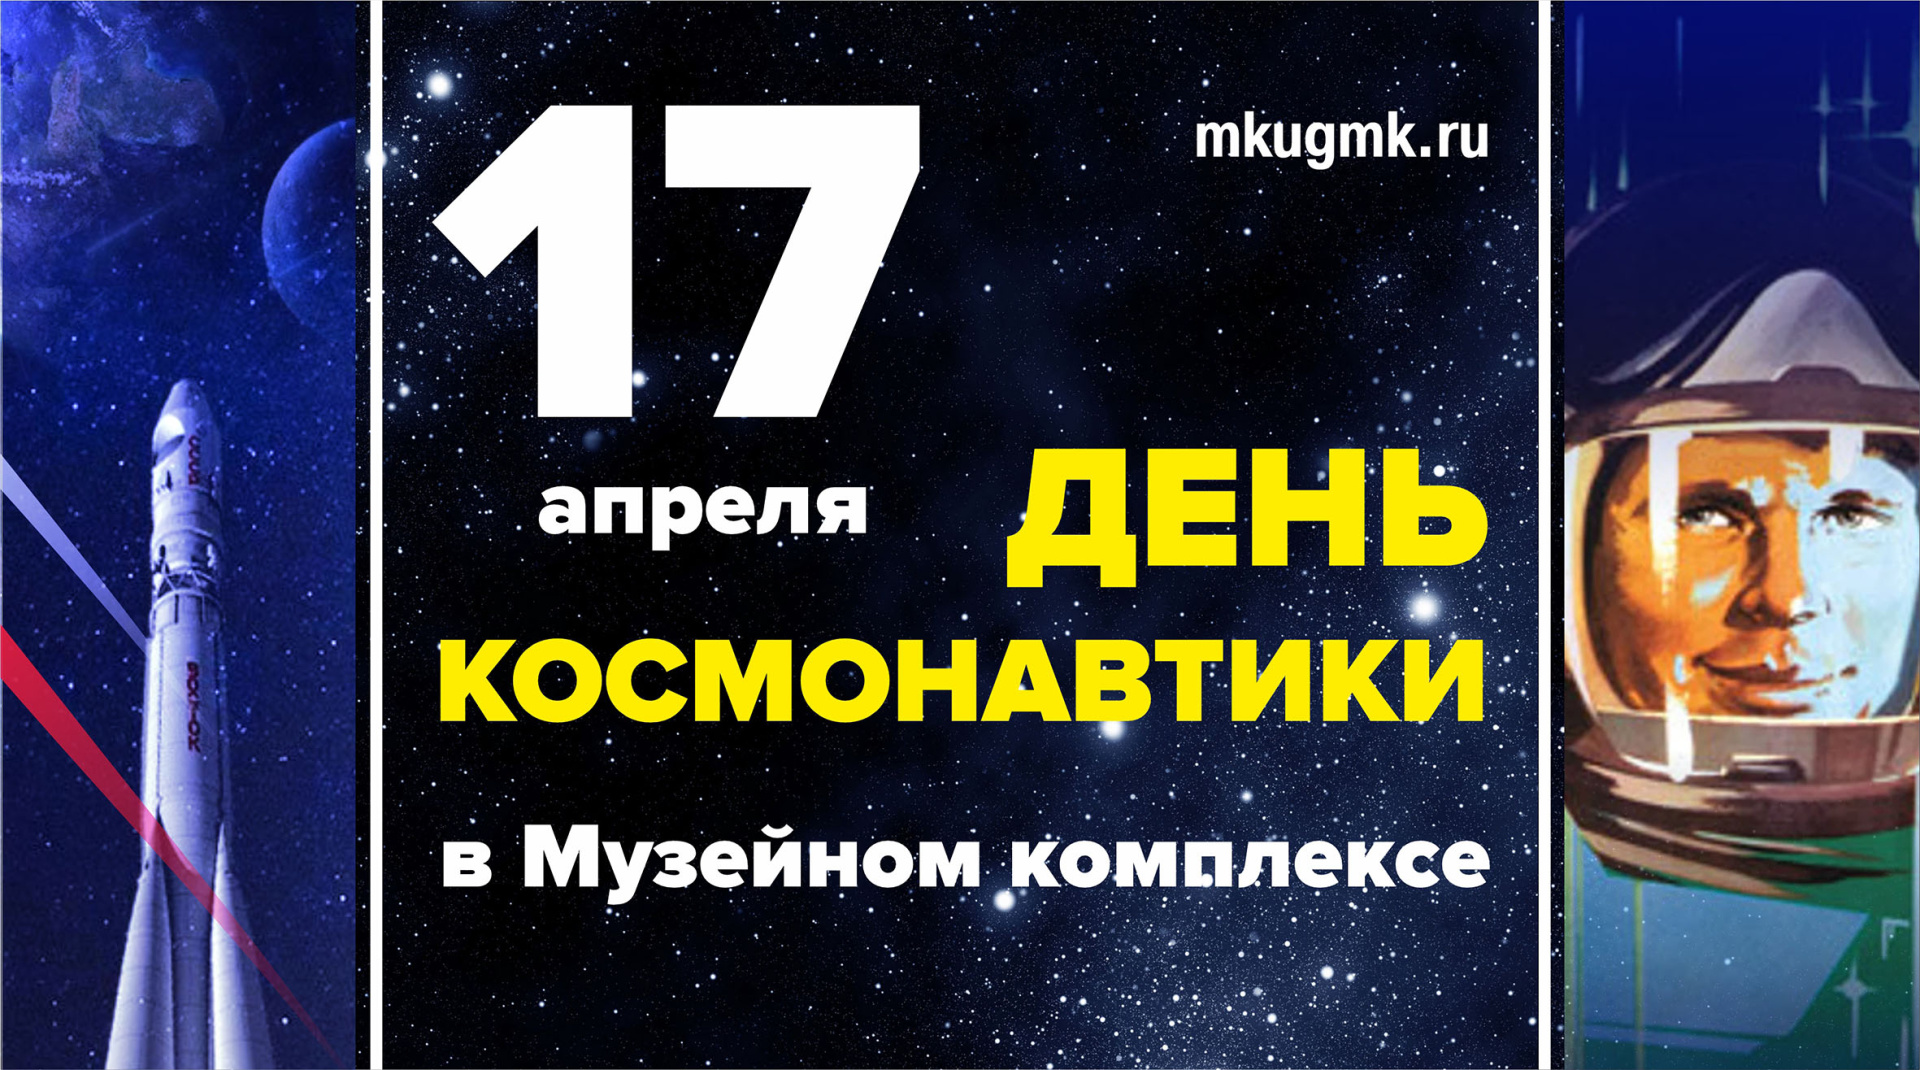 Приглашаем вместе отпраздновать День космонавтики!